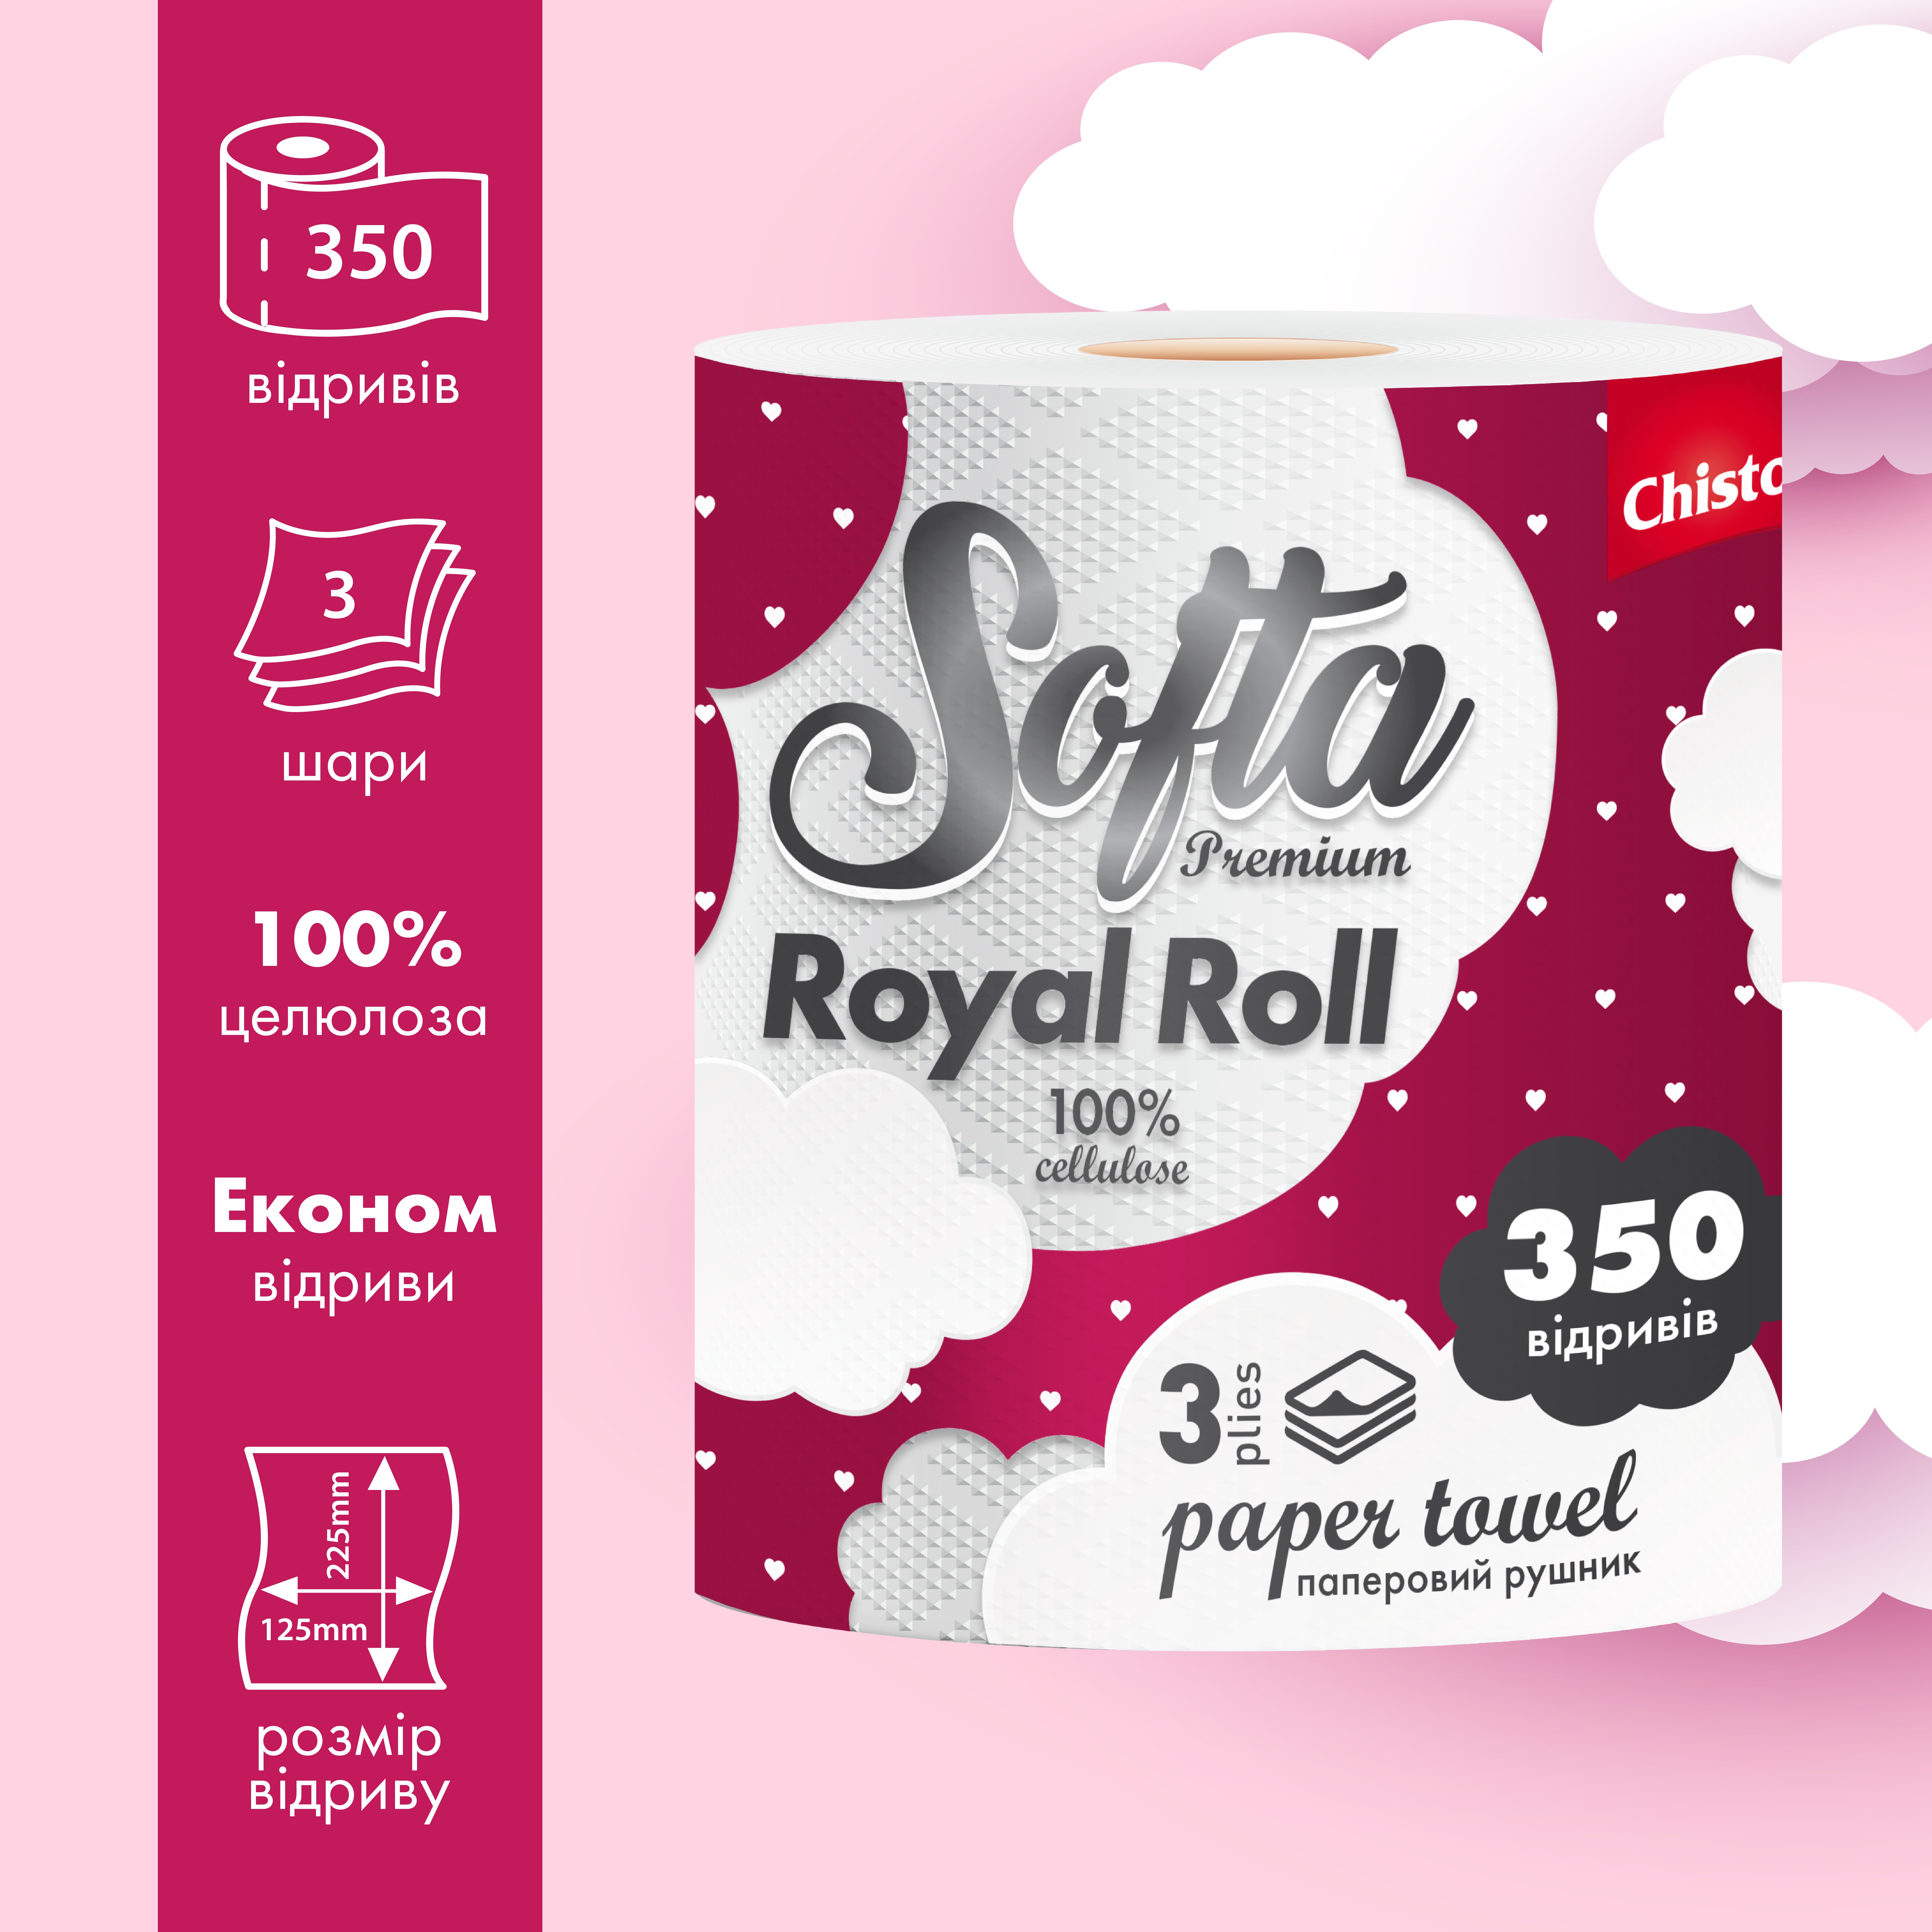 Бумажные полотенца Chisto Softa Royl Roll на гильзе трехслойные 350 отрывов 1 рулон - фото 2